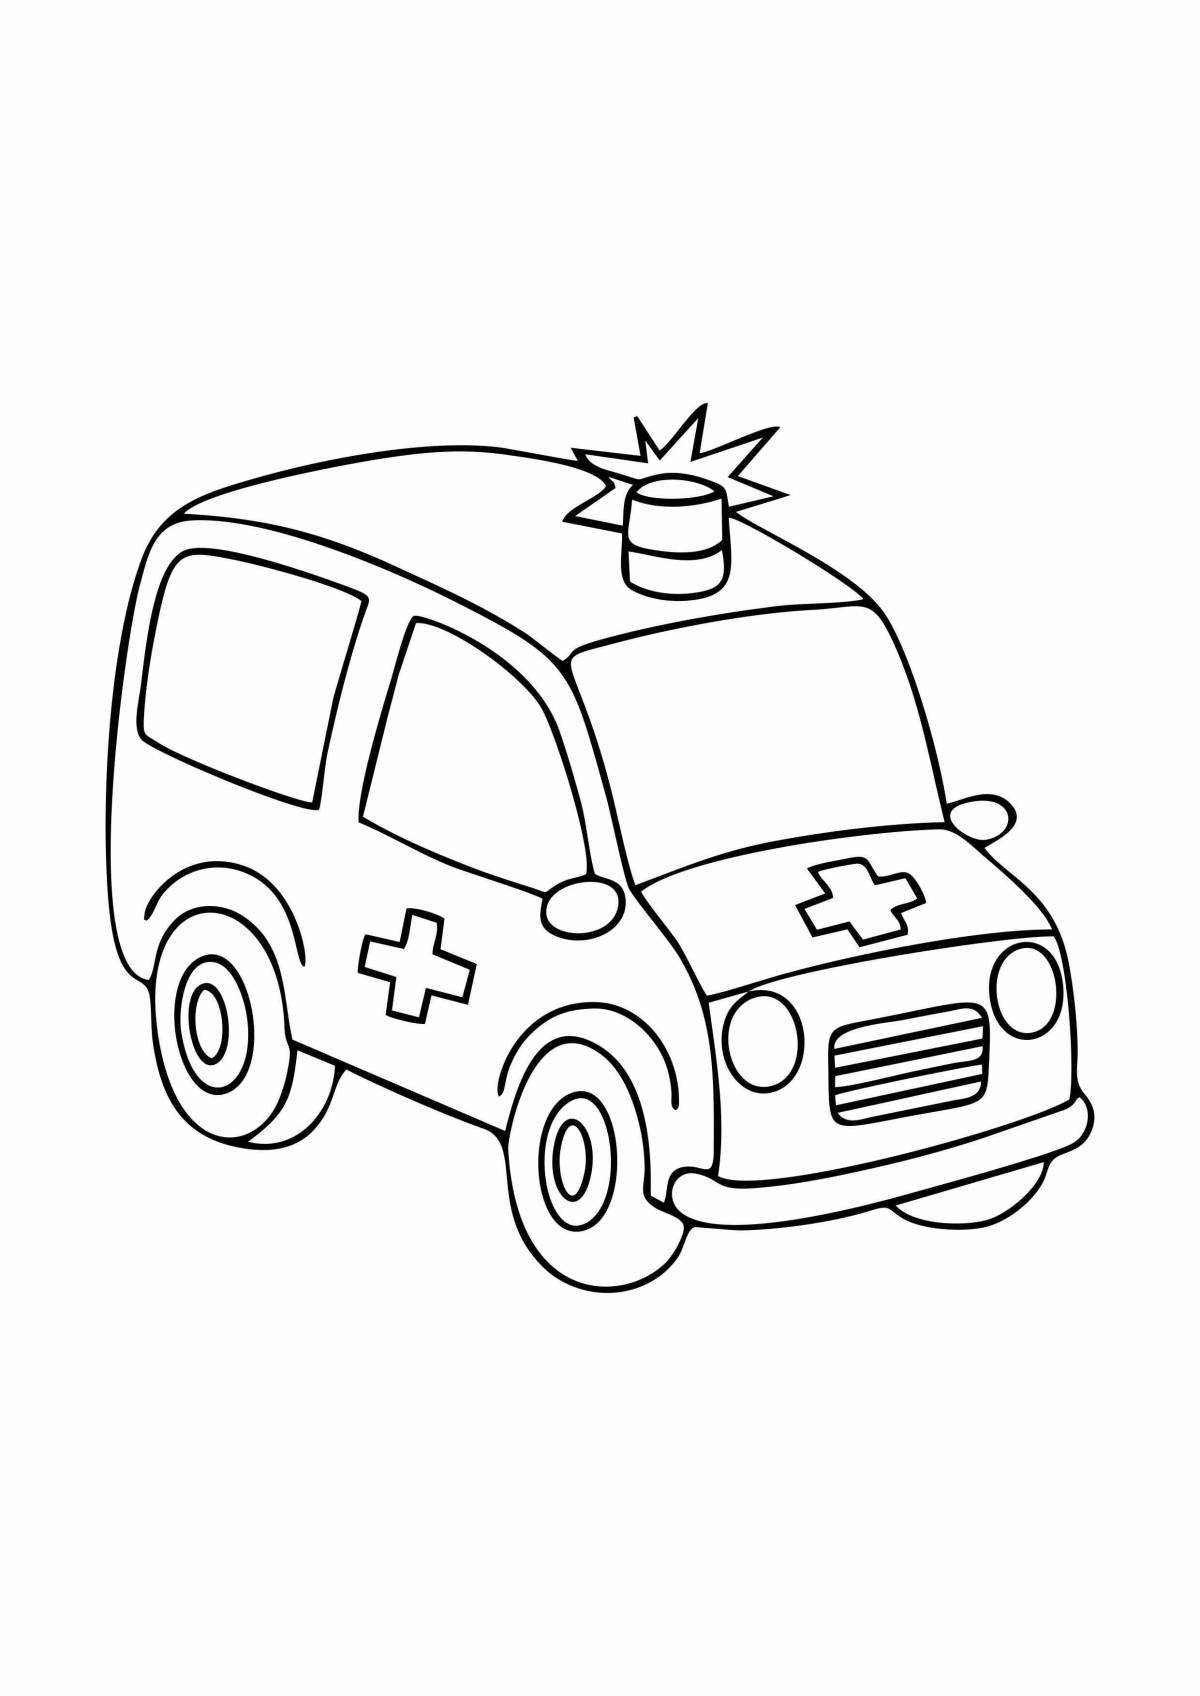 Очаровательная раскраска скорой помощи для детей 3-4 лет